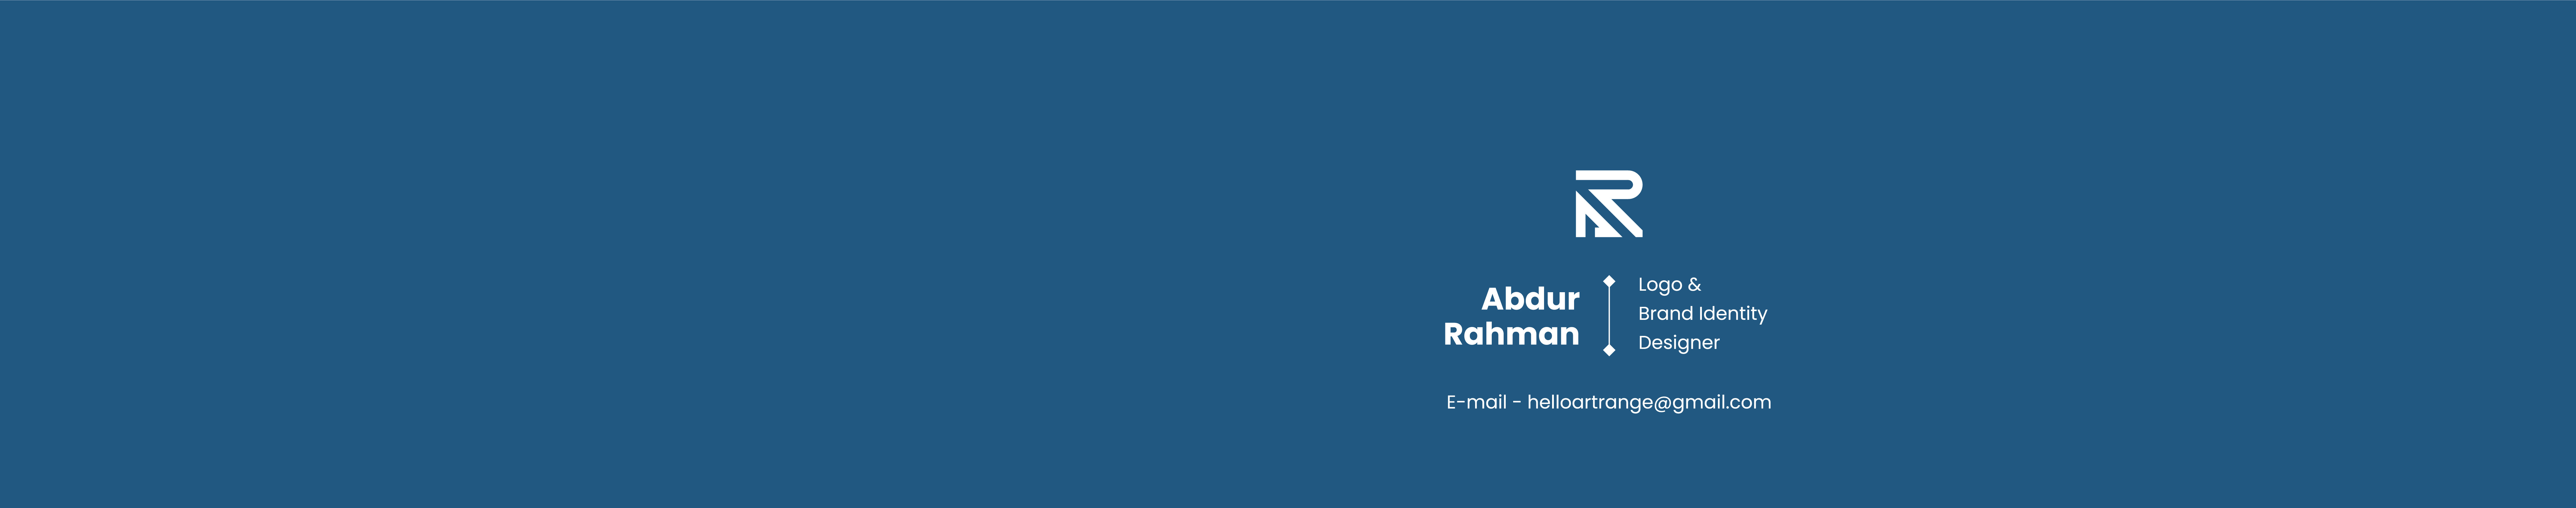 Profielbanner van Abdur Rahman